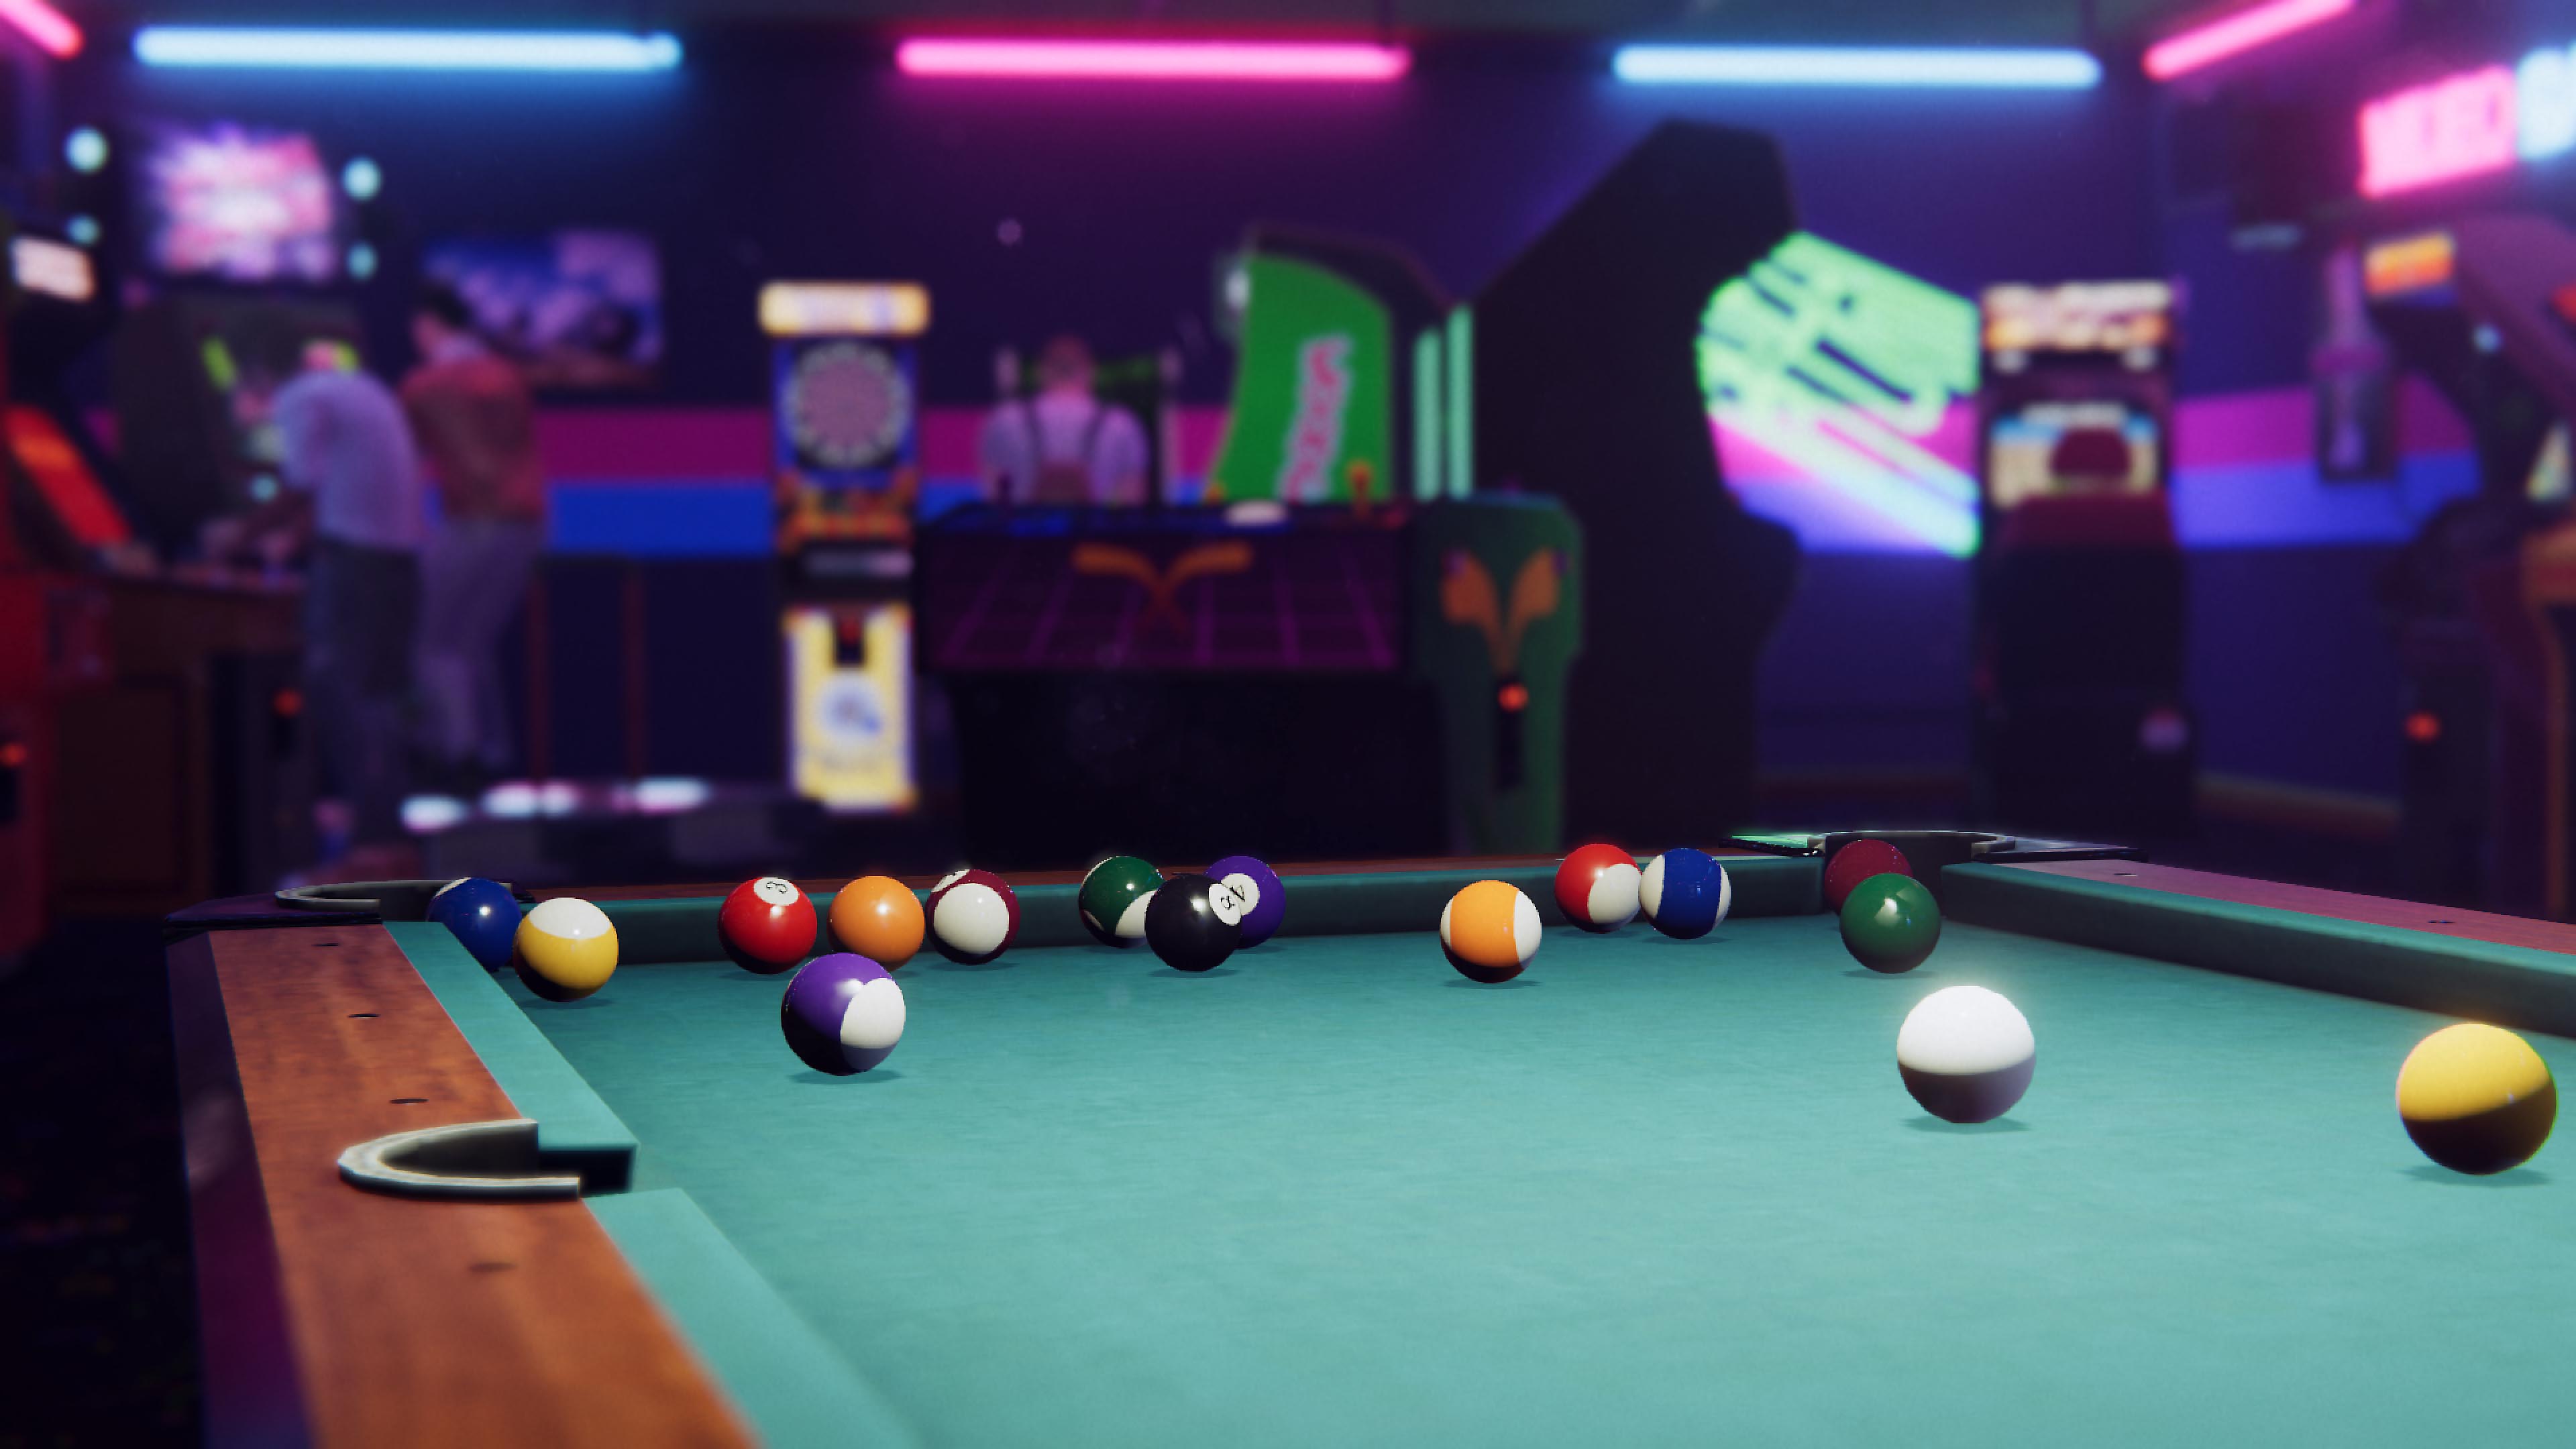 Arcade Paradise - Istantanea della schermata che mostra un tavolo da biliardo